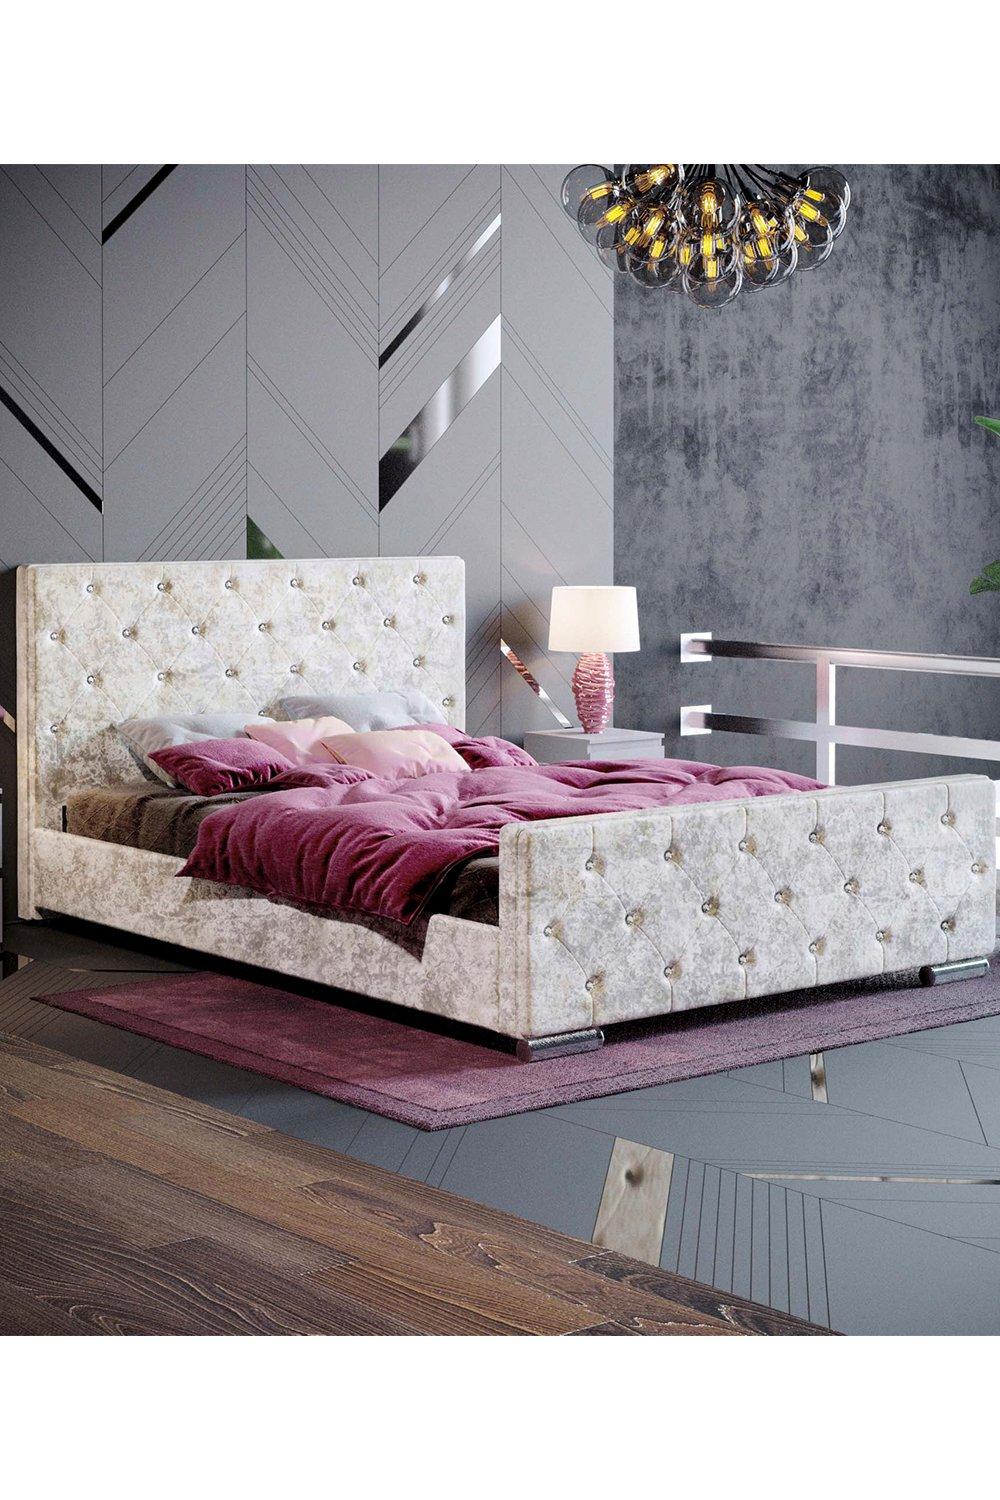 Vida Designs Arabella Double Bed Frame Velvet Fabric 950 x 1450 x 2080 mm